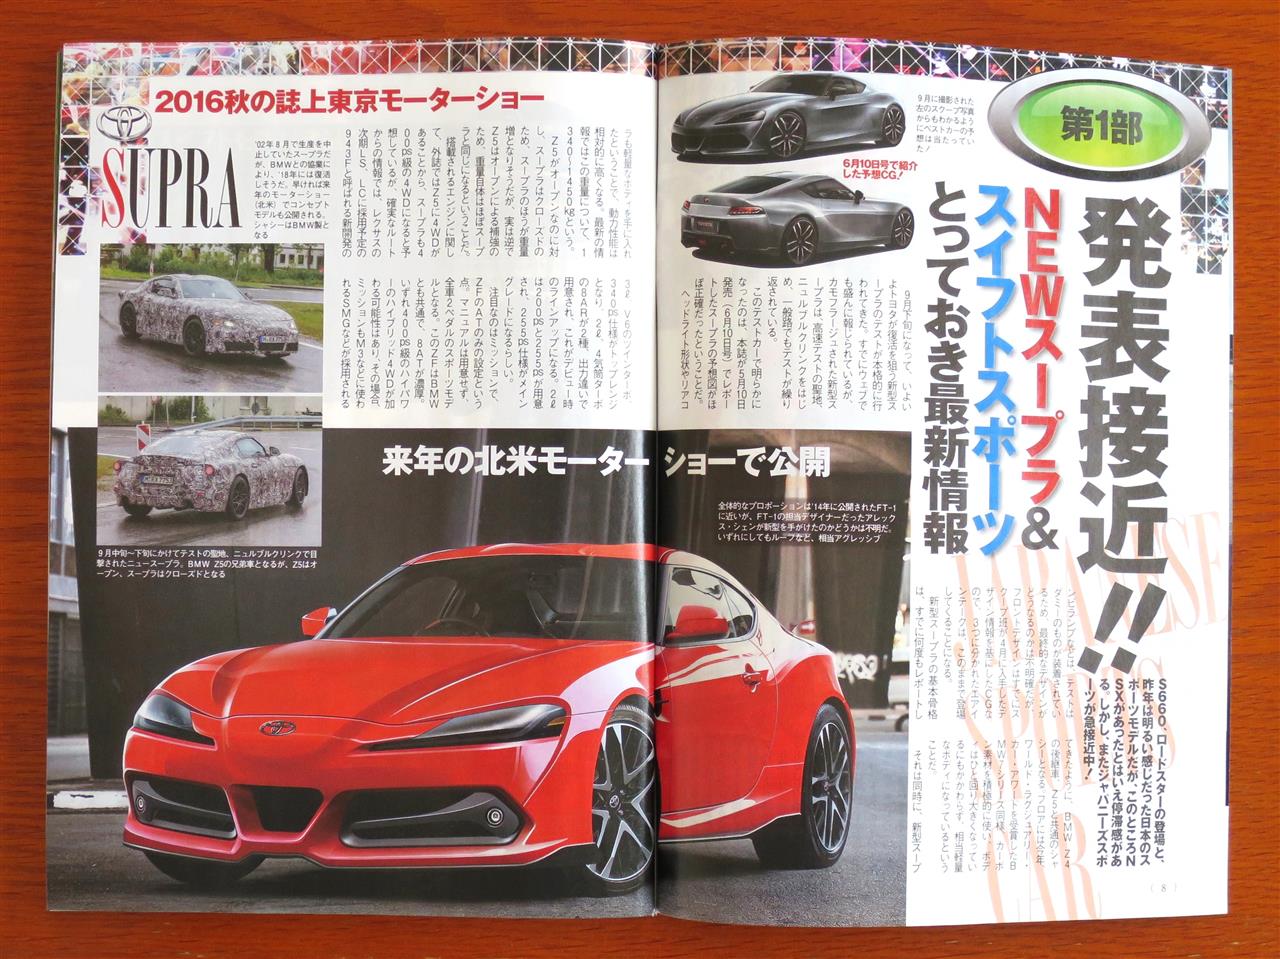 Mkv Toyota Supra Photoshops Renders Based On Ft 1 Prototypes Page 10 Supramkv Toyota Supra Forum 0 Mkv Generation